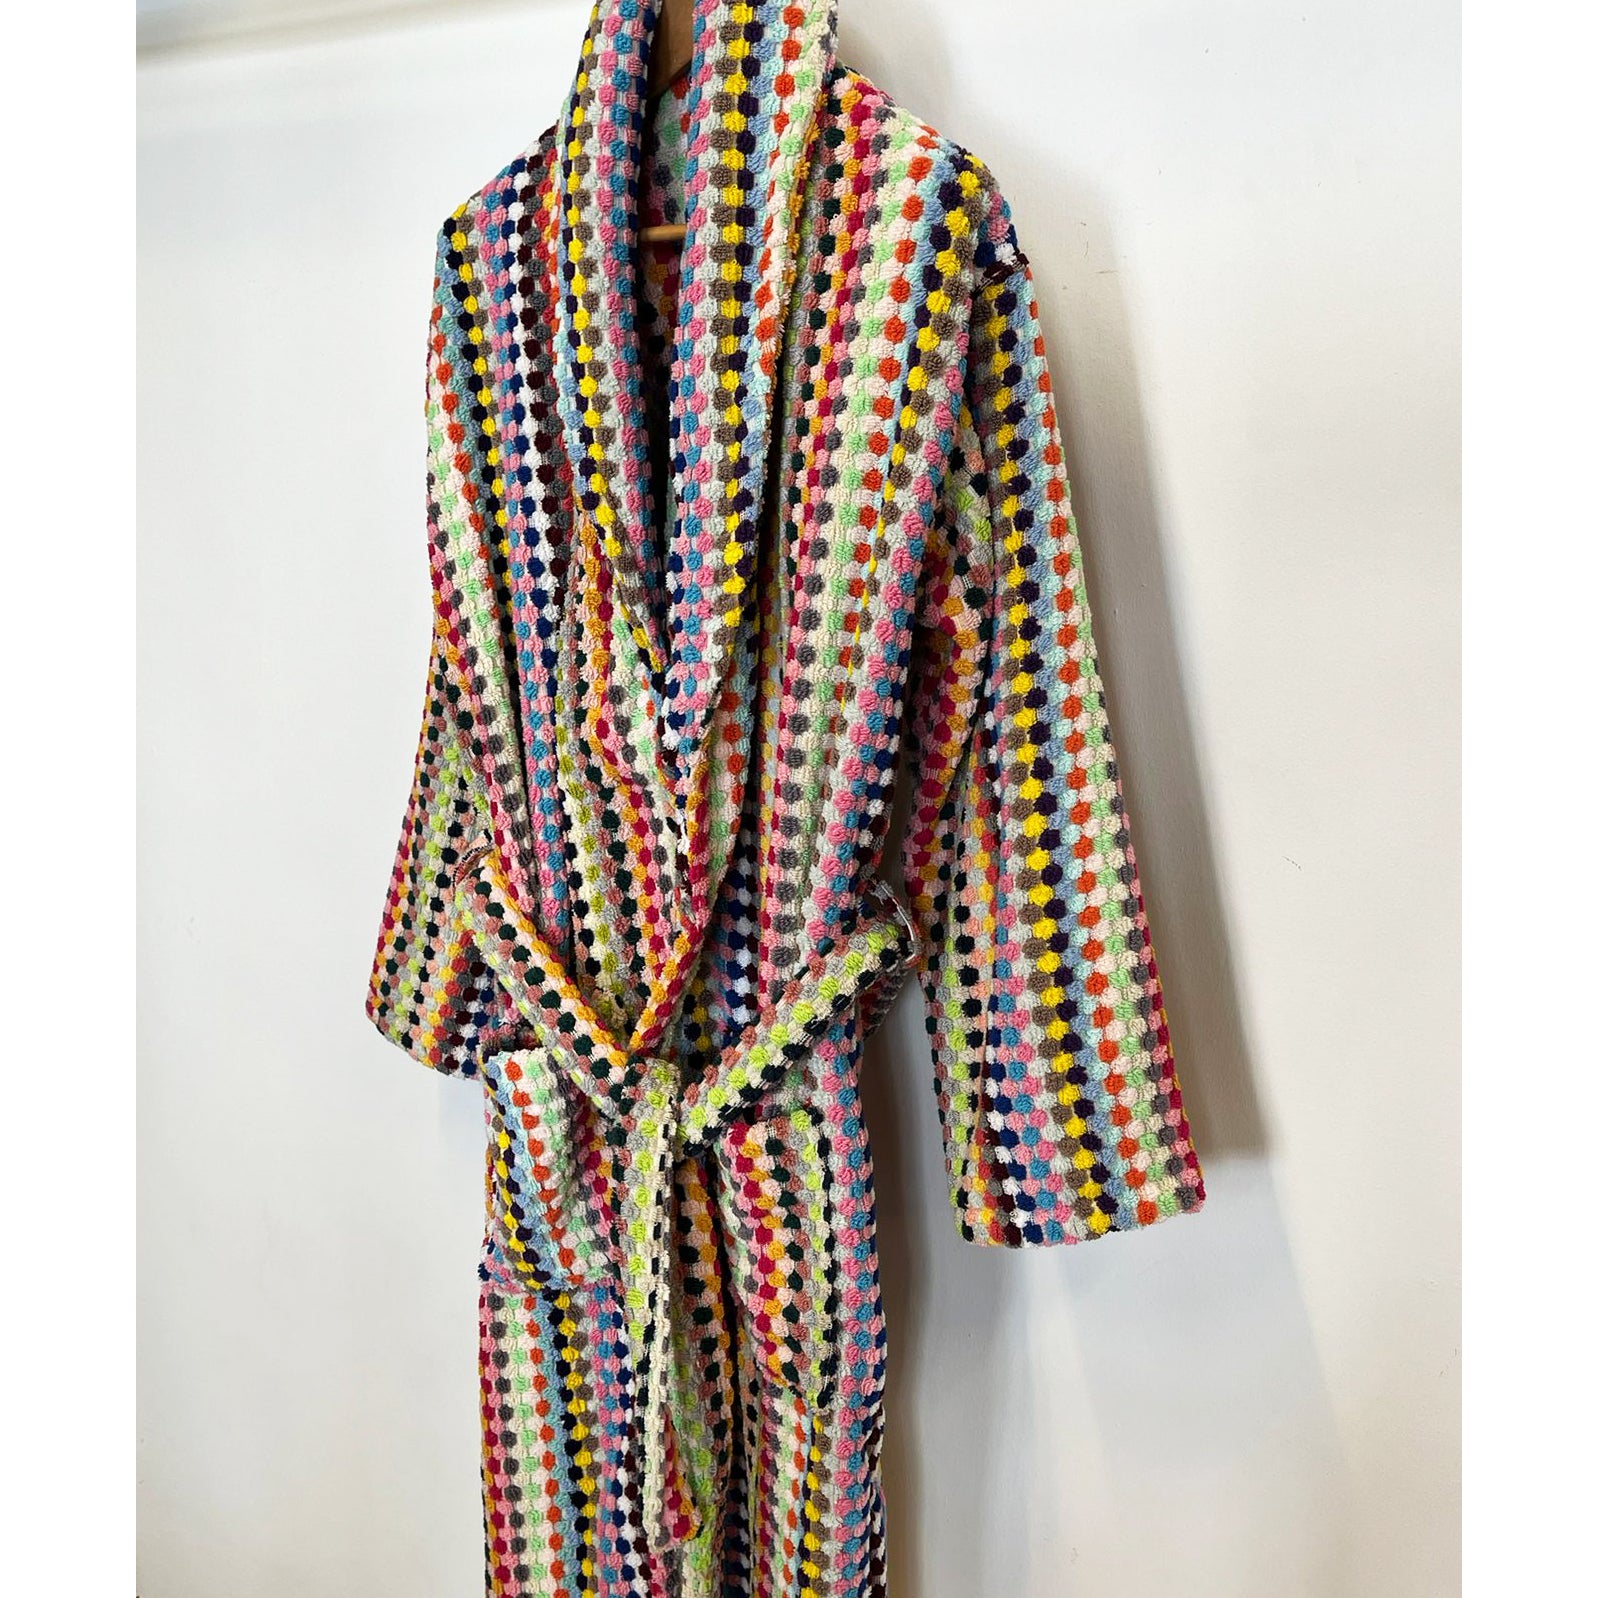 Bath Robe in Terry Cotton Jacquard in Multicolor